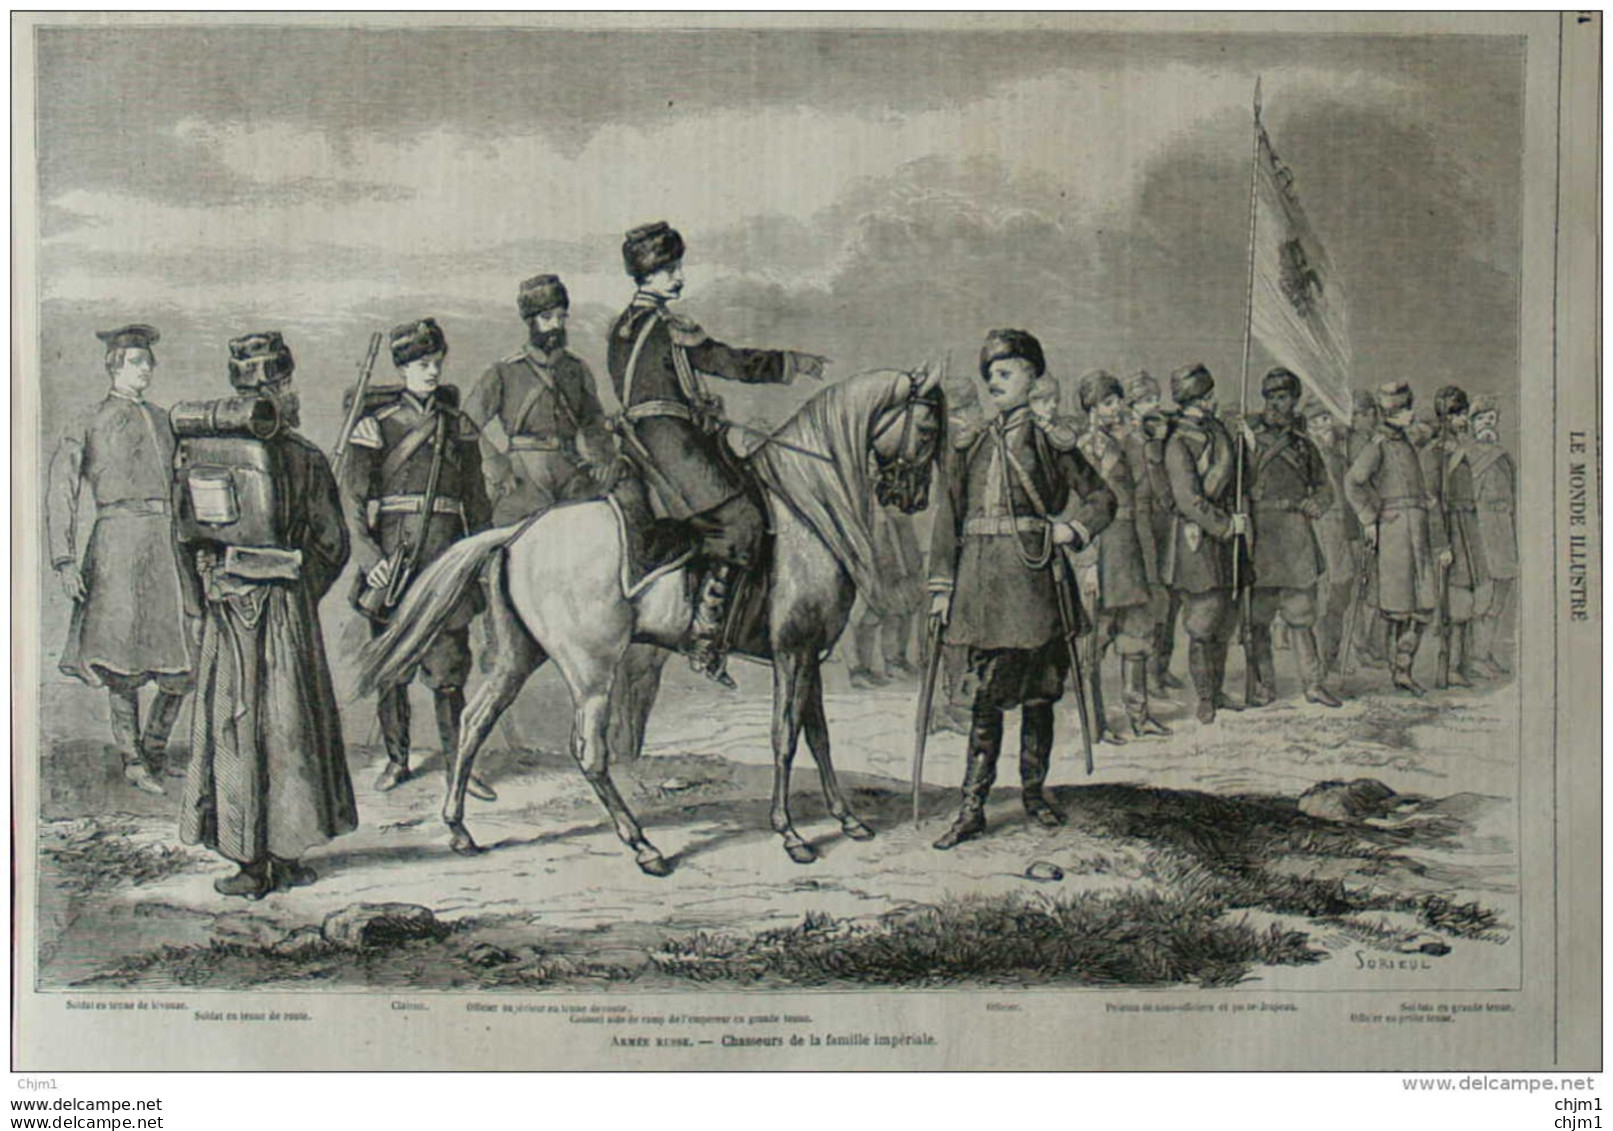 Armée Russe - Chasseurs De La Famille Impériale - Officier Supérieure - Clairon - Soldats - Page Original 1860 - Documents Historiques